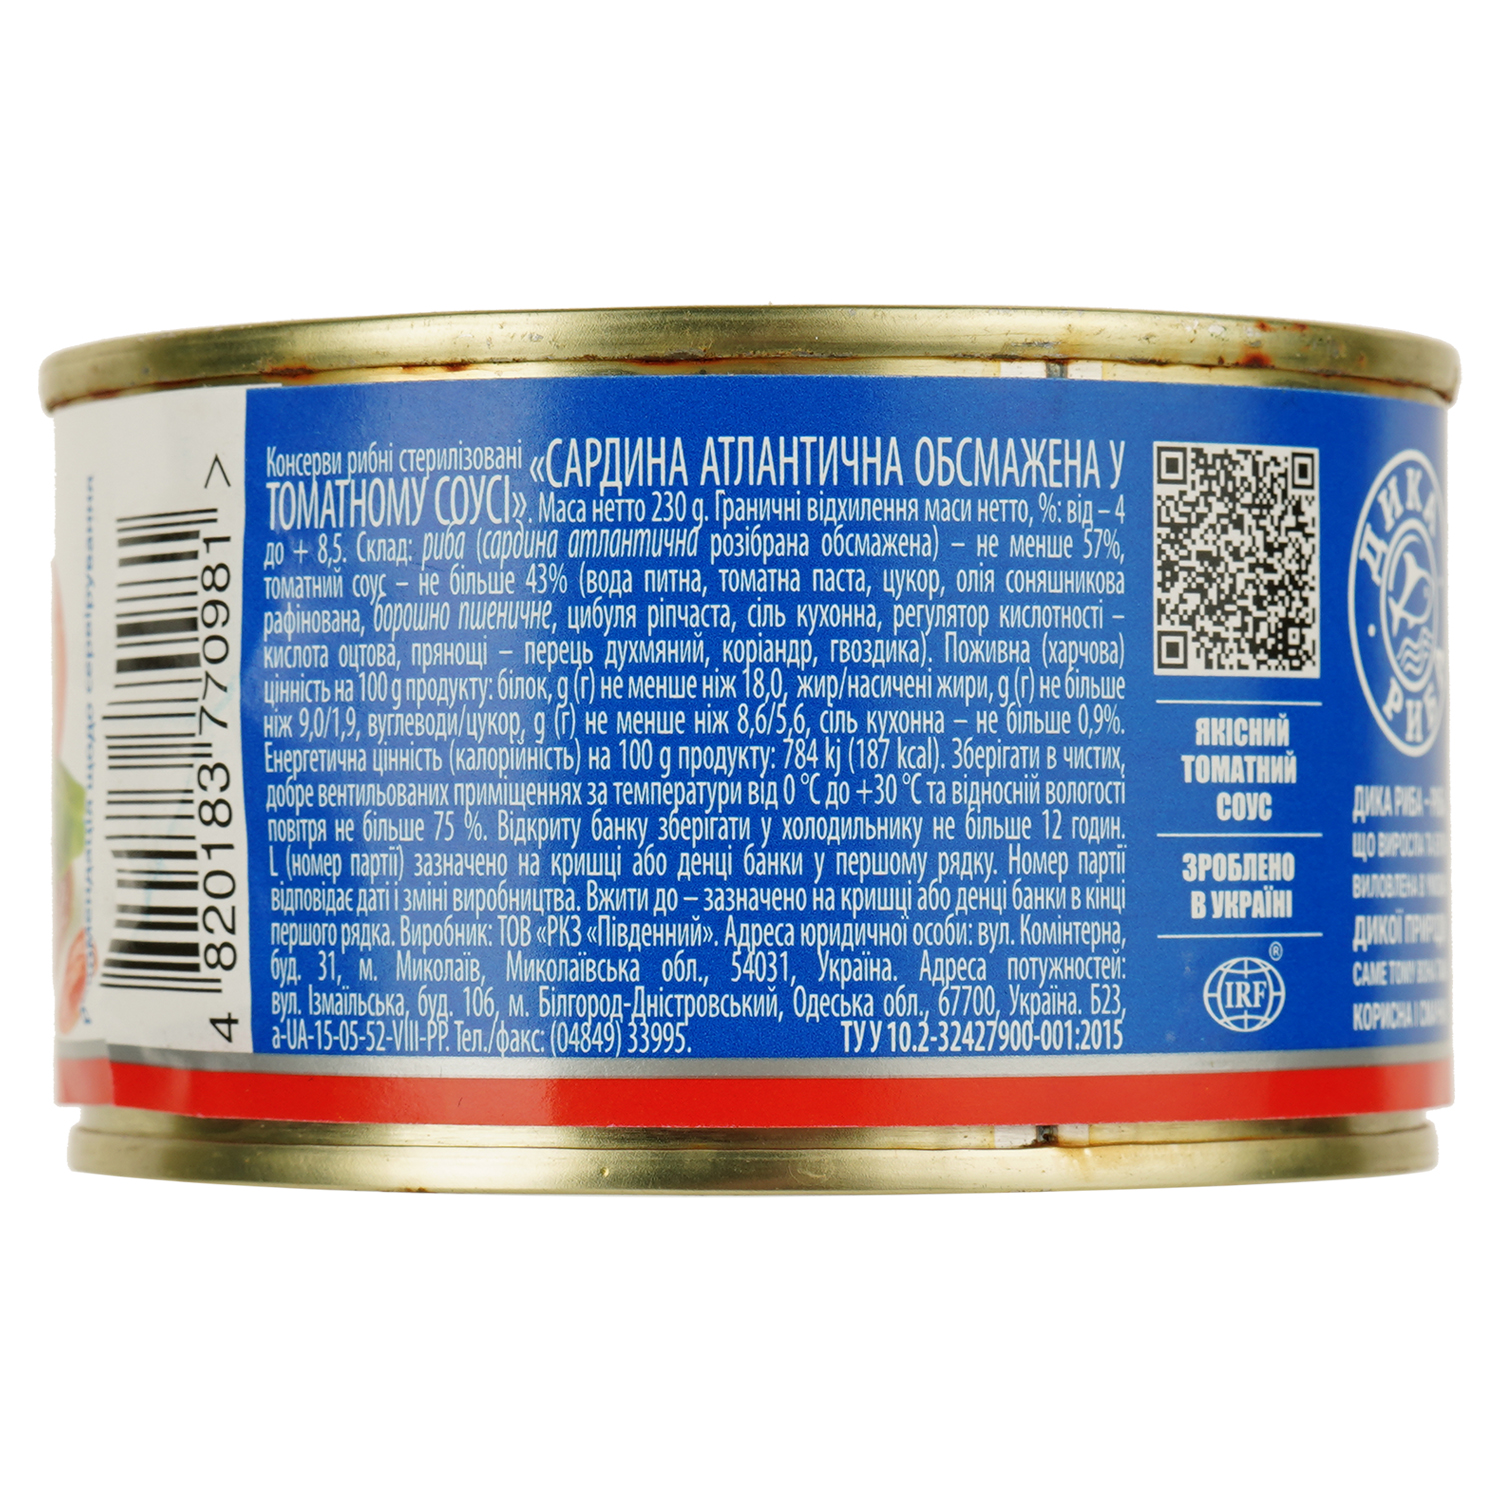 Сардини в томатному соусі Аквамарин обсмажена 230 г (614580) - фото 2